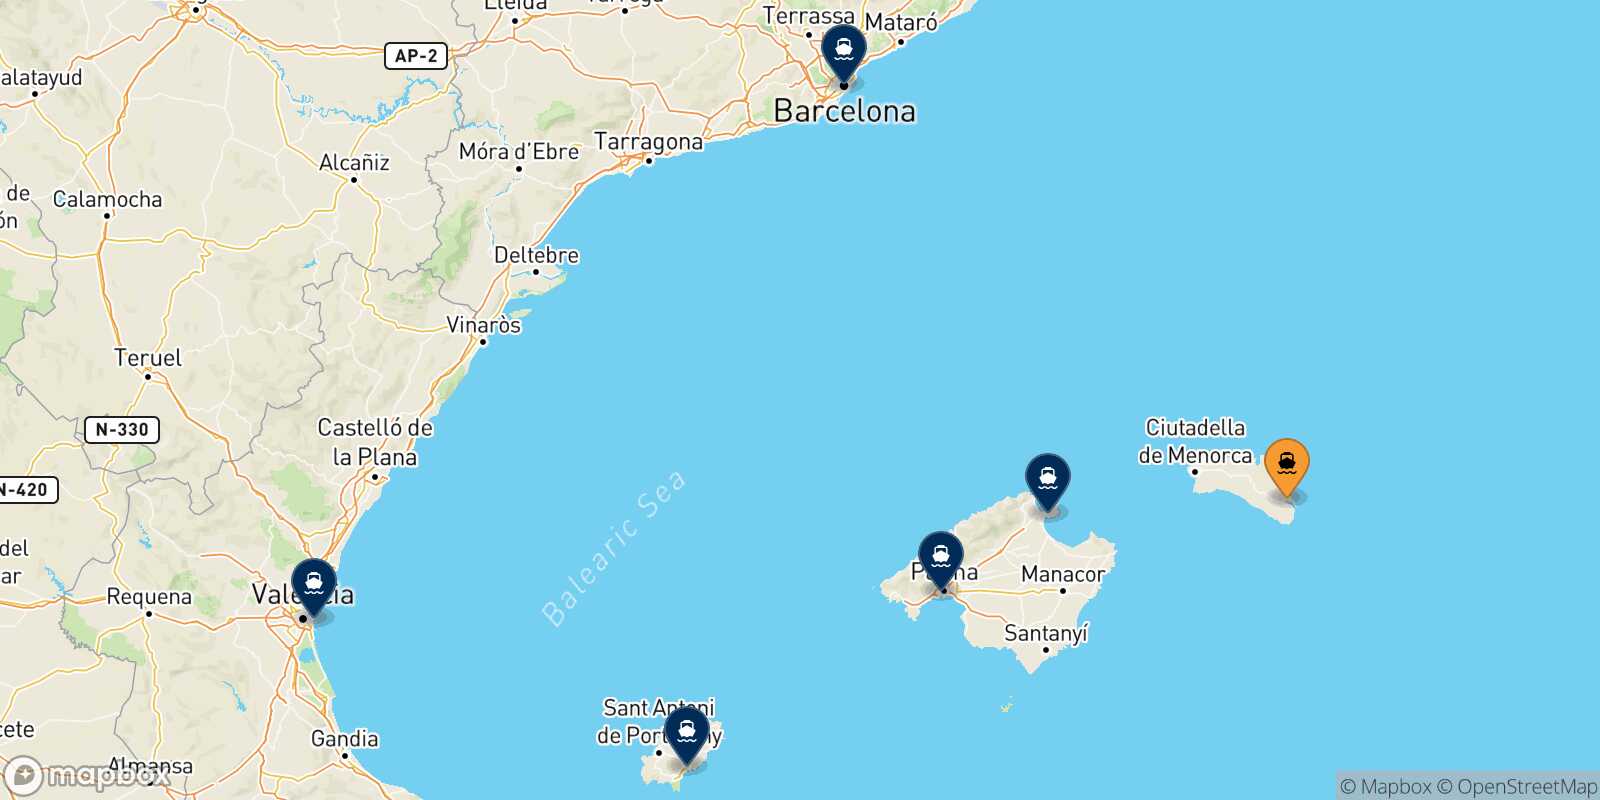 Mappa delle destinazioni raggiungibili da Mahon (Minorca)